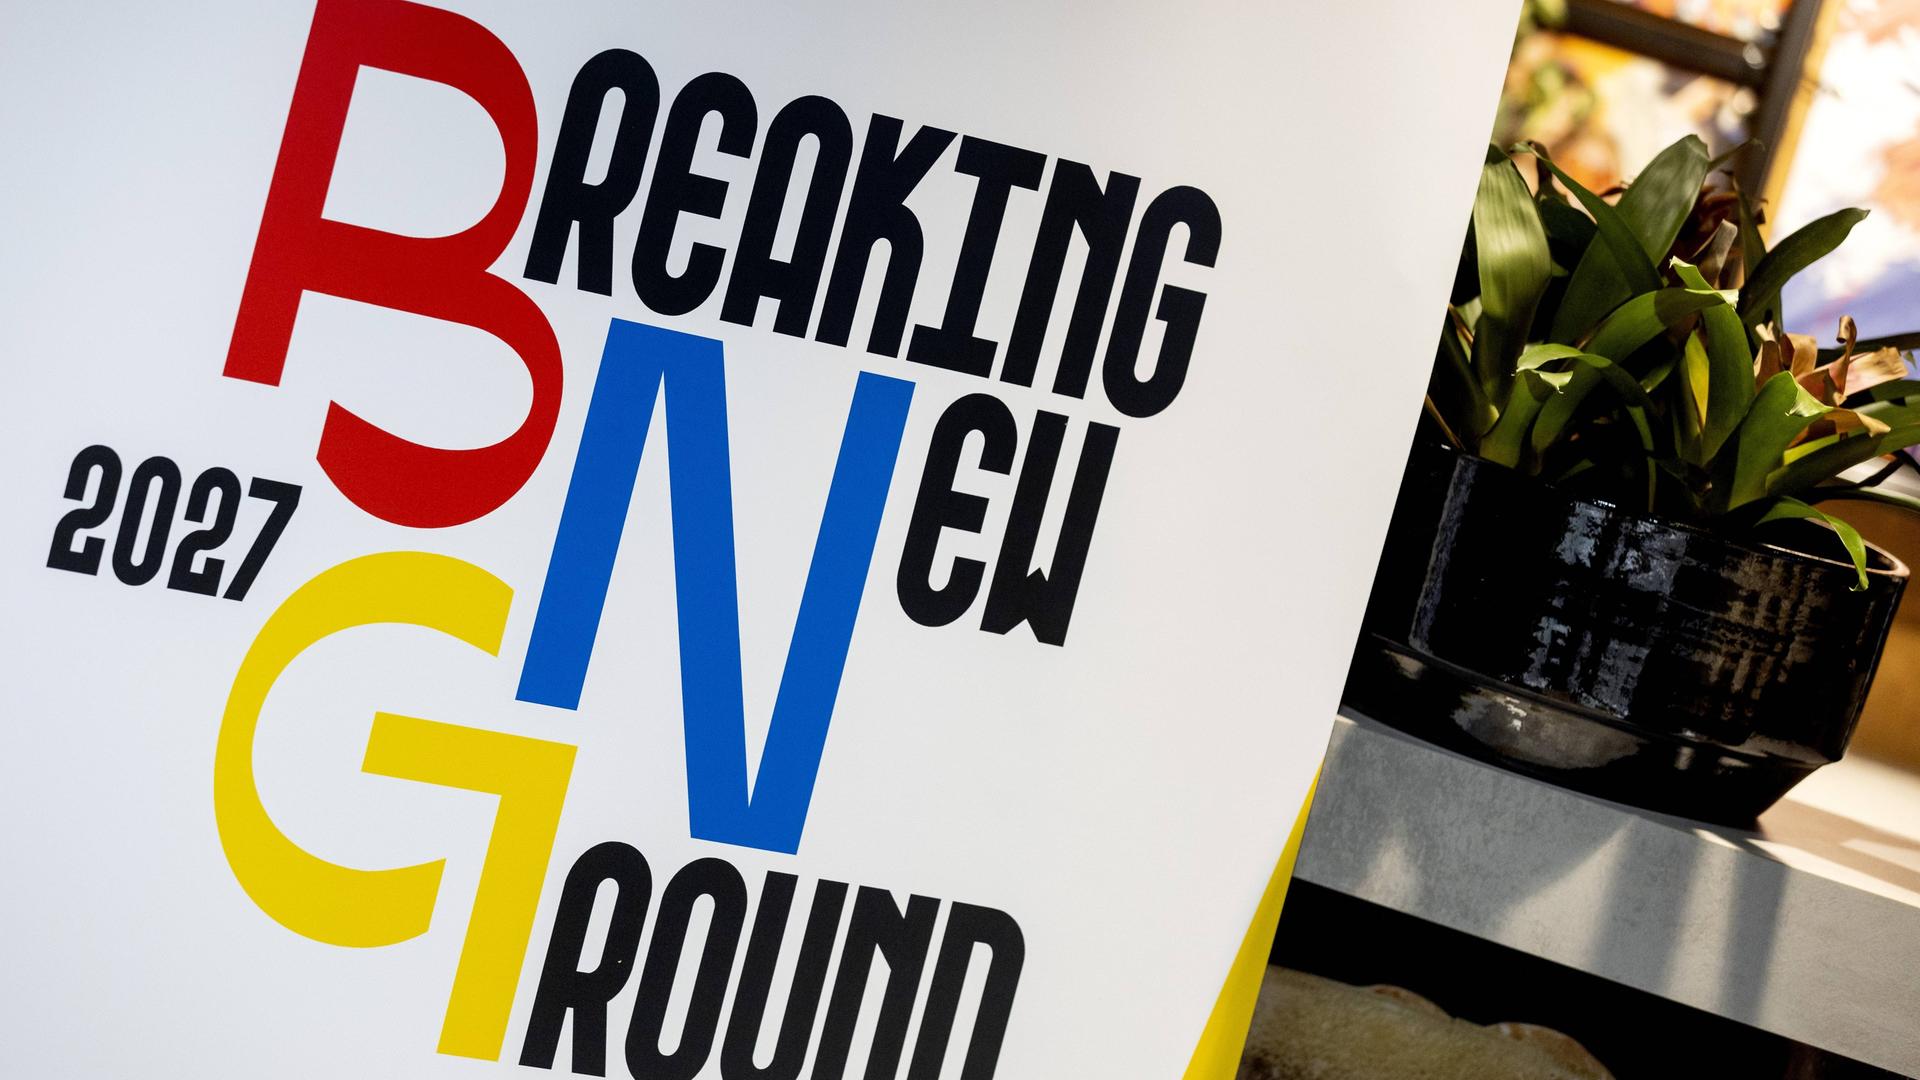 Das Logo der Bewerbung für die Fußball-WM der Frauen 2027 vopn Deutschland, Niederlande und Belgien mit dem Titel "Breaking New Ground"